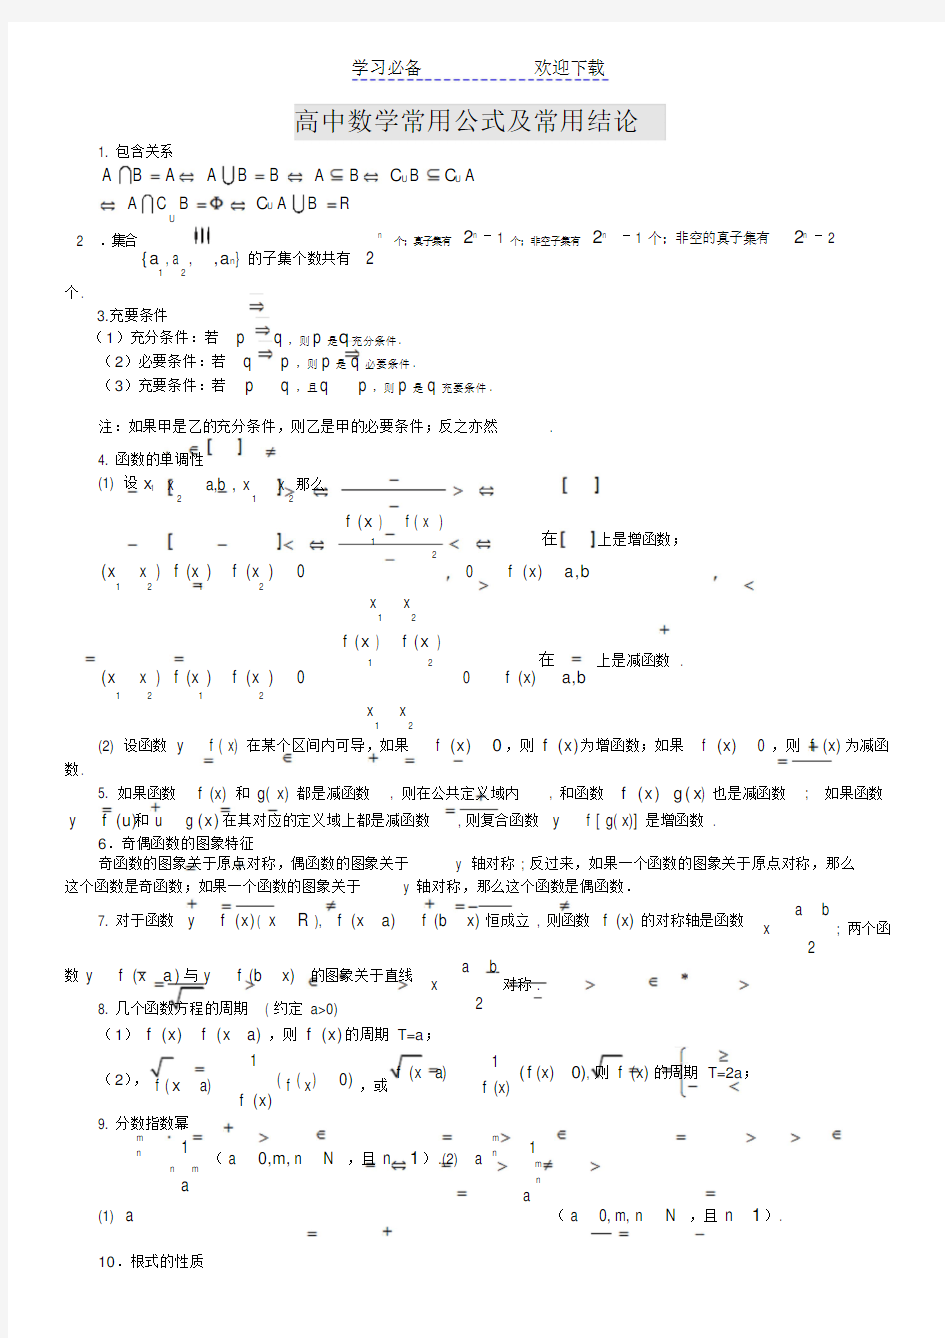 高中数学公式大全(完整版)(20210127120631)